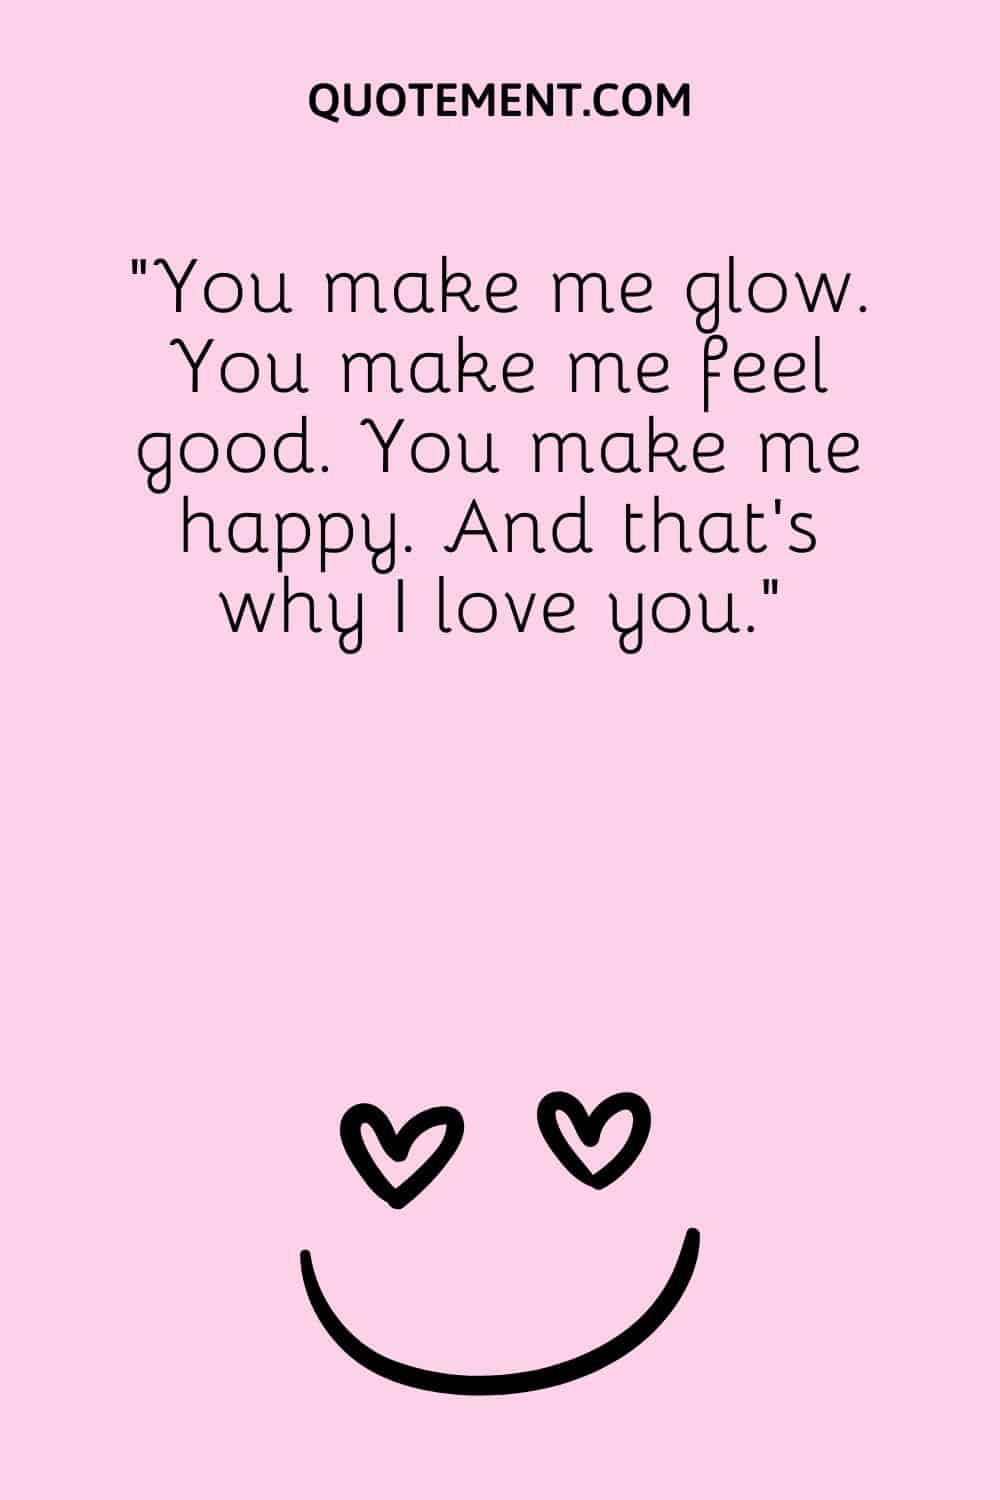 You make me glow. You make me feel good.